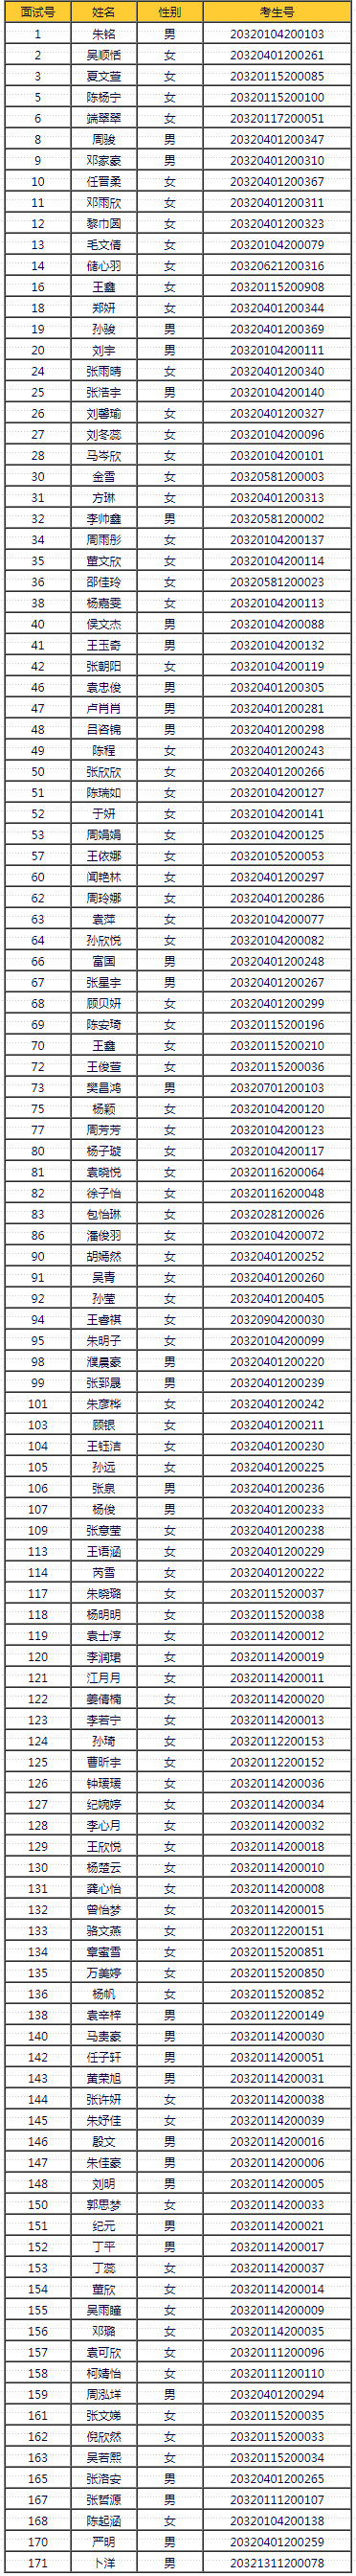 南京旅游职业学院2020年中职注册空中乘务专业面试、体检结果.jpg